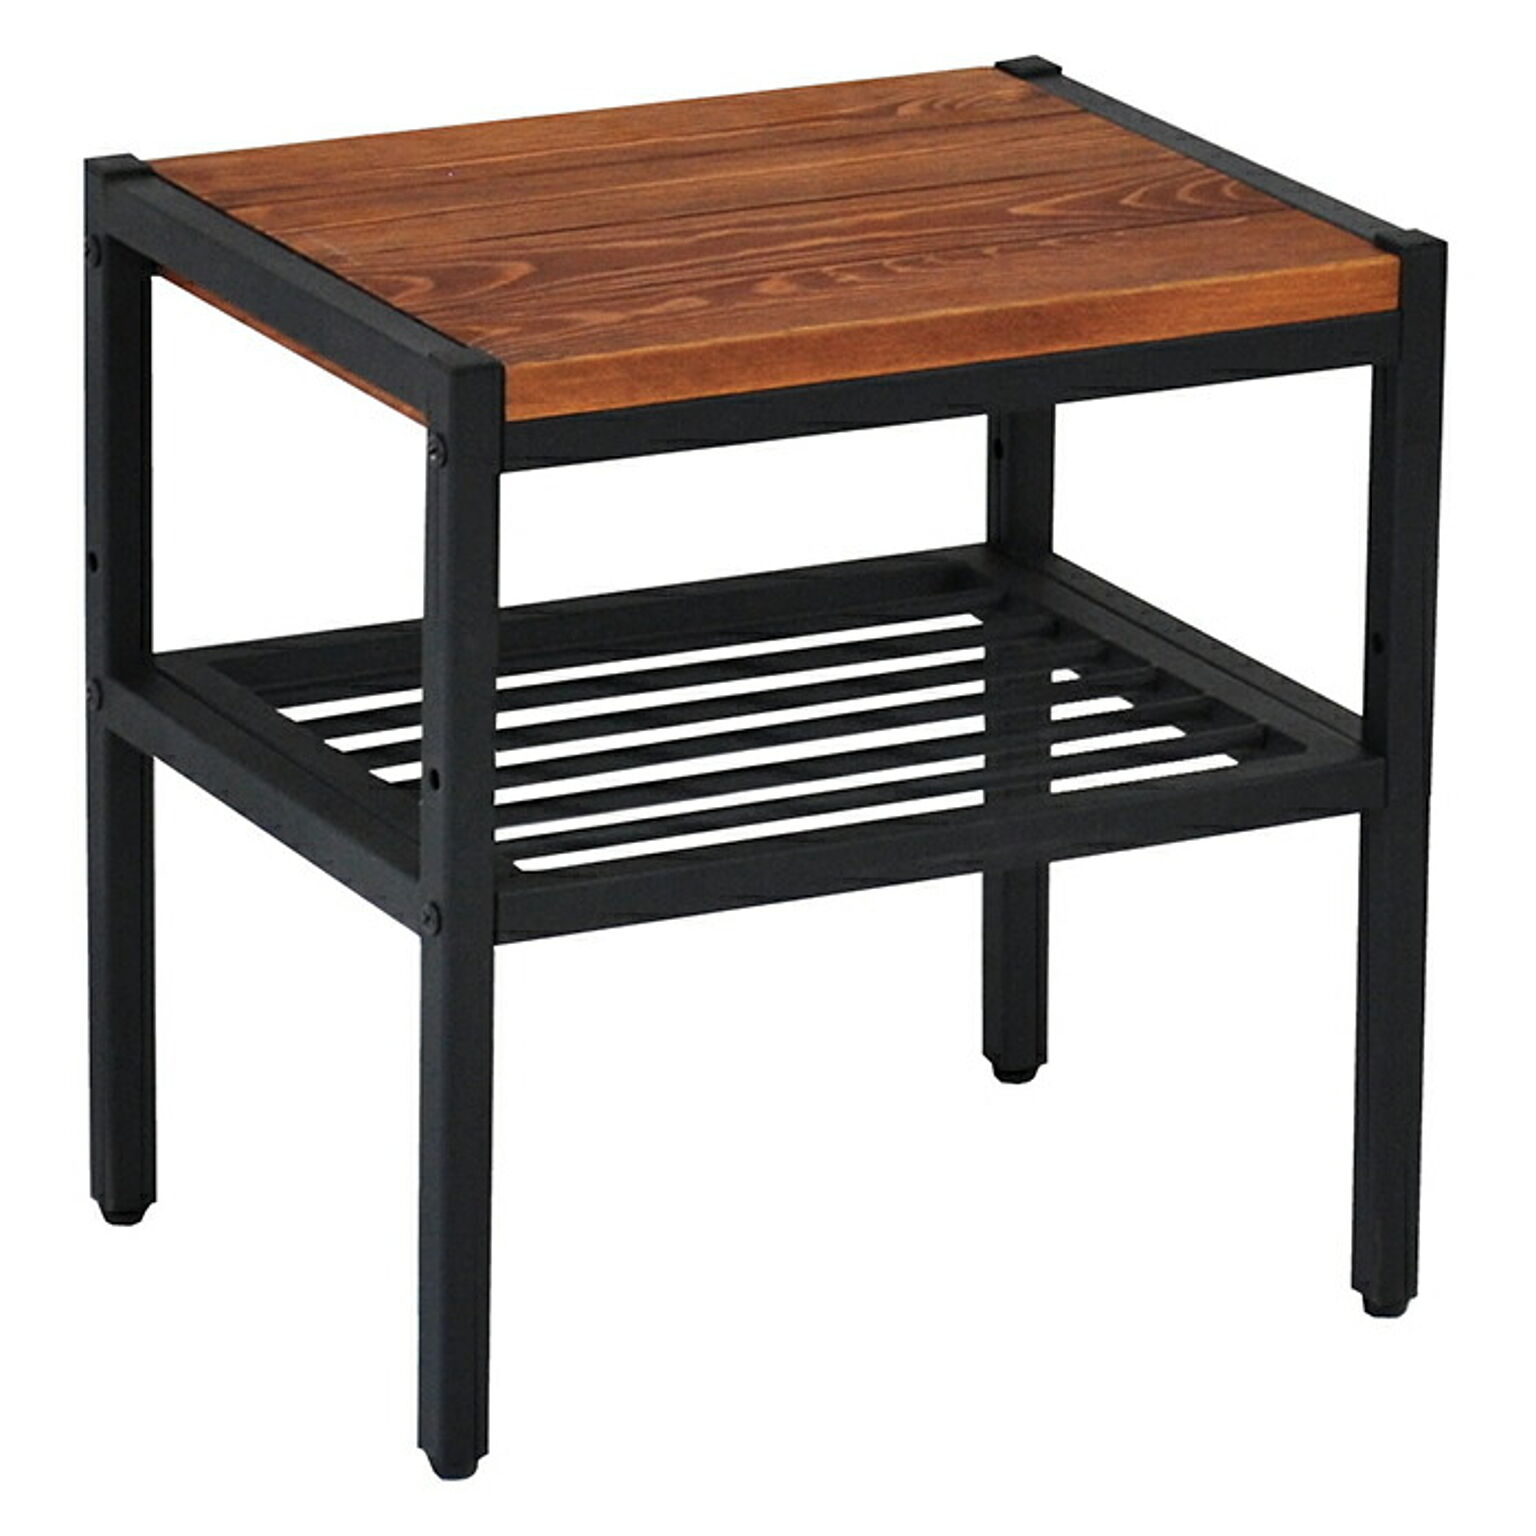 テーブル 組立式 天然木製 サイドテーブル PT-400BRN 幅400x奥行300x高さ410mm 住まいスタイル